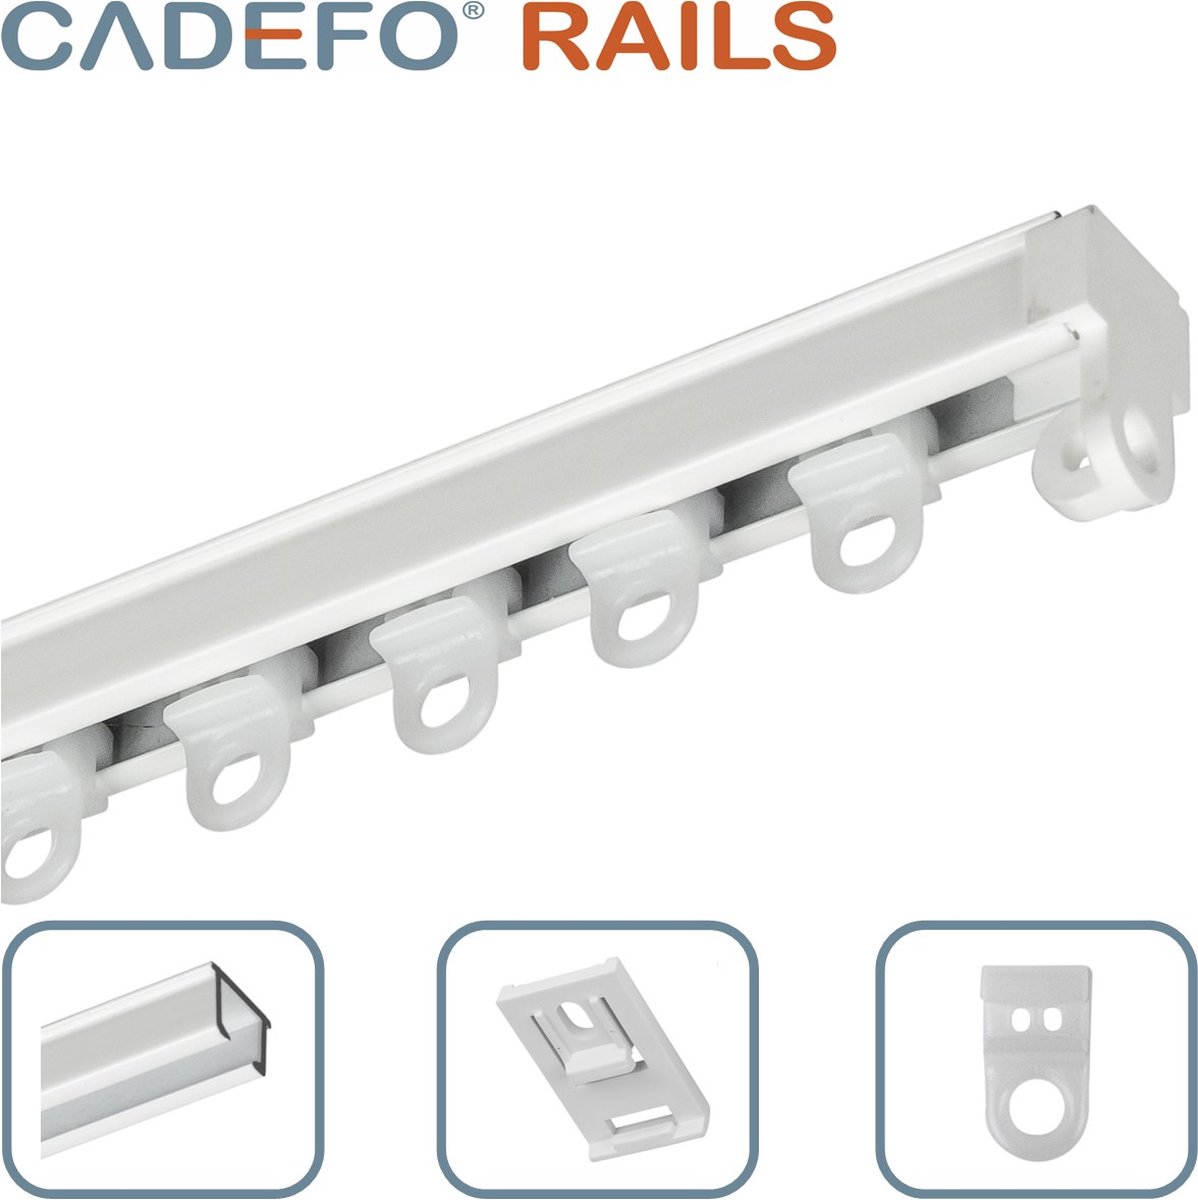 CADEFO RAILS (451 - 500 cm) Gordijnrails - Compleet op maat! - UIT 1 STUK - Leverbaar tot 6 meter - Plafondbevestiging - Lengte 474 cm